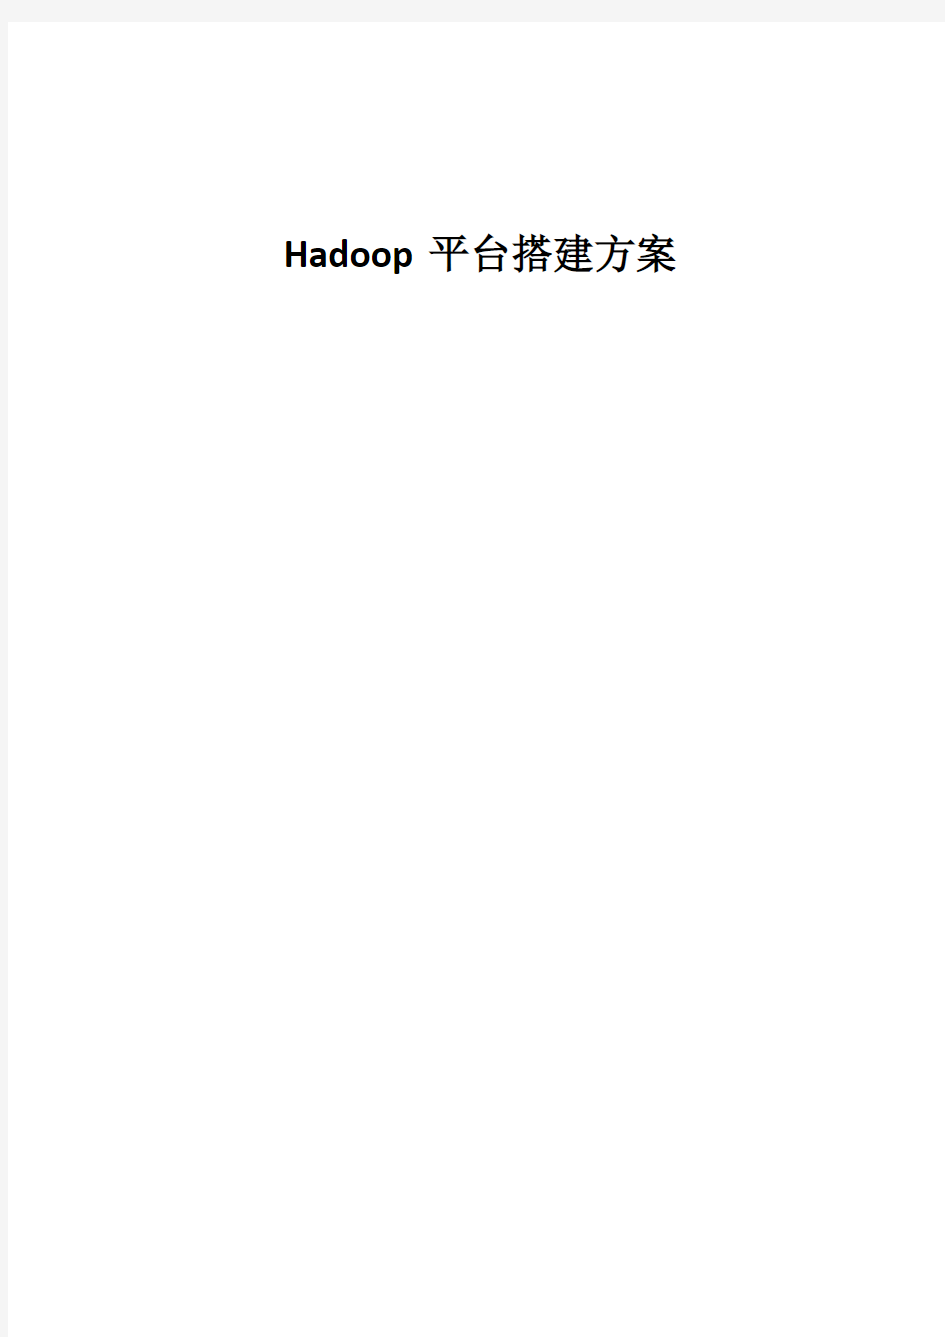 Hadoop平台搭建方案